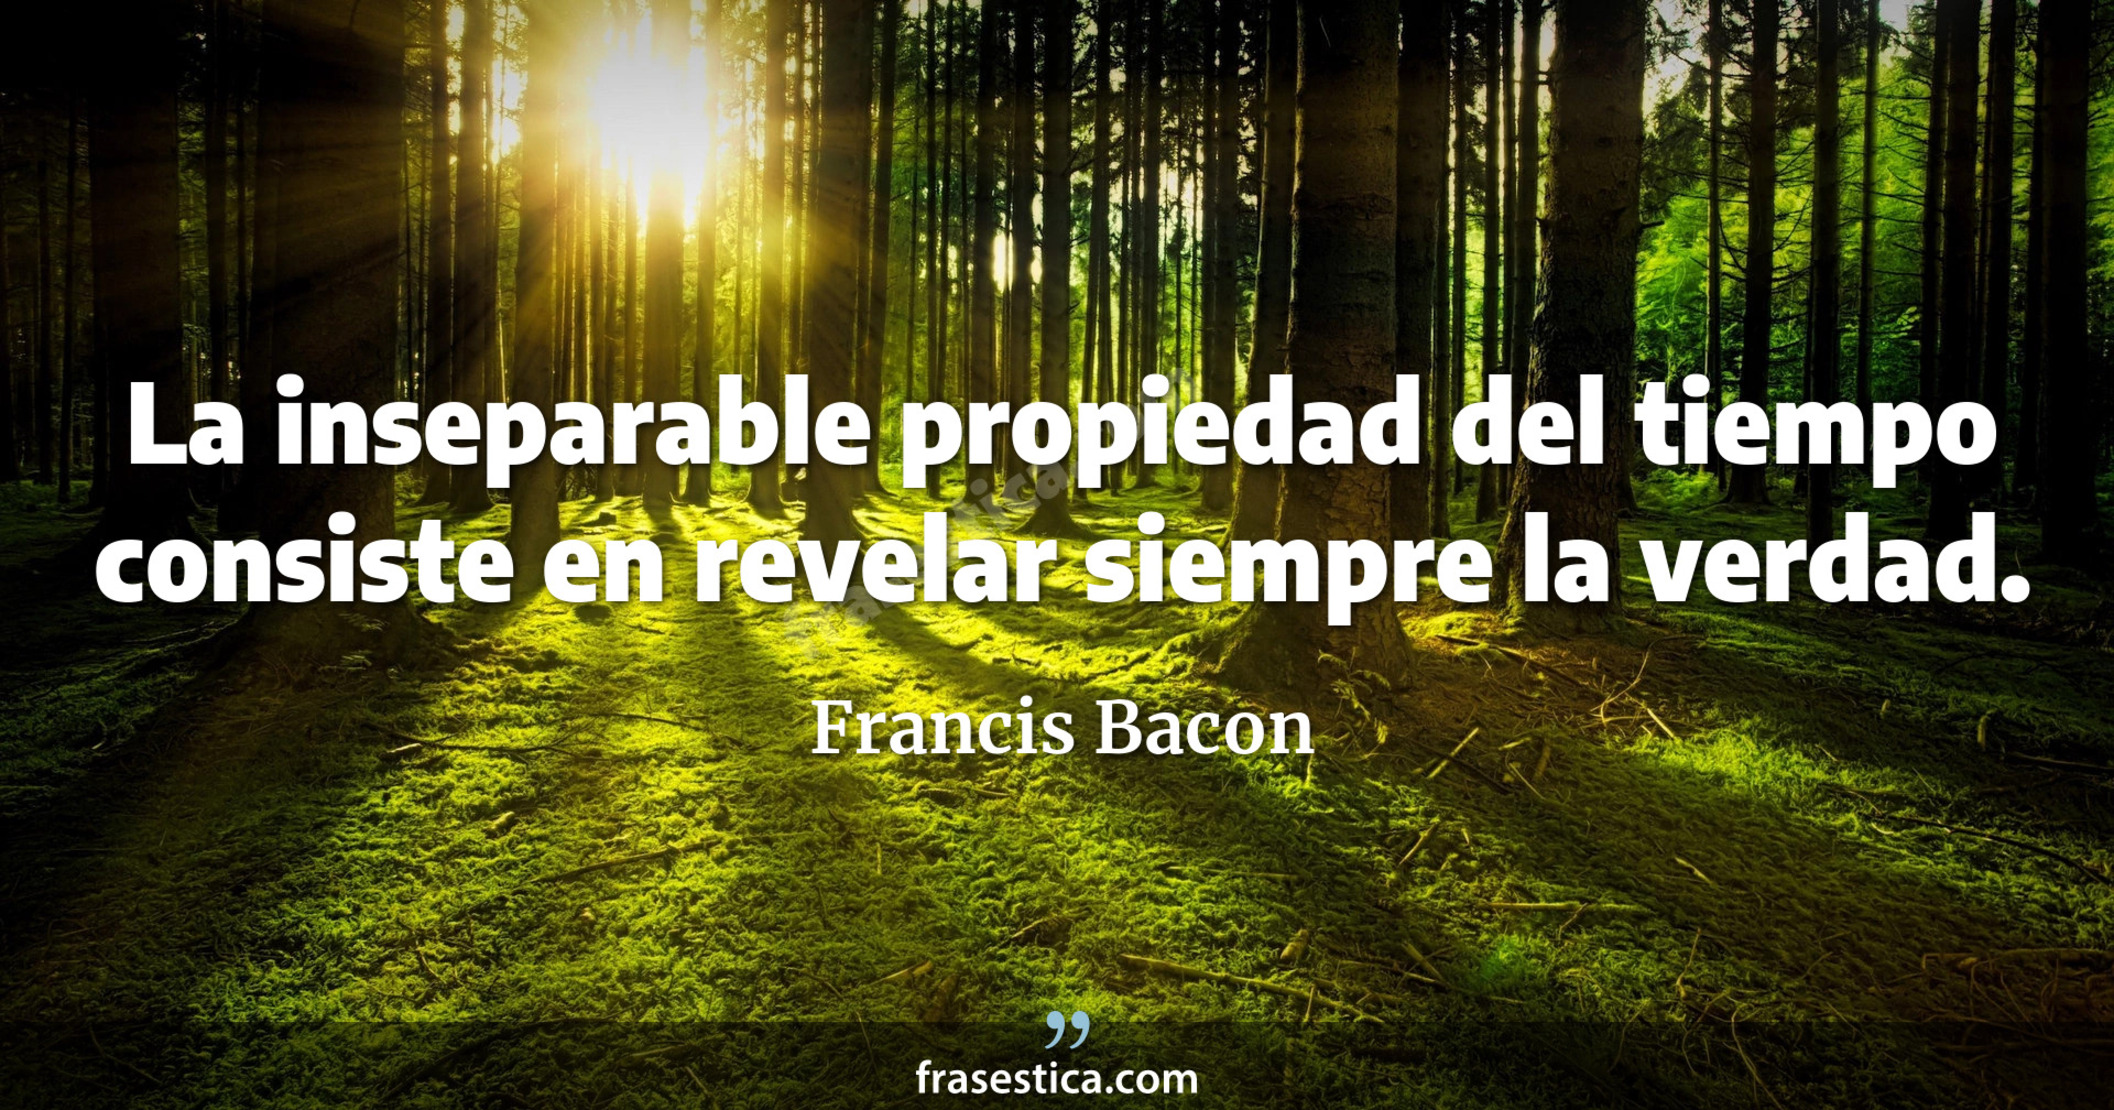 La inseparable propiedad del tiempo consiste en revelar siempre la verdad. - Francis Bacon